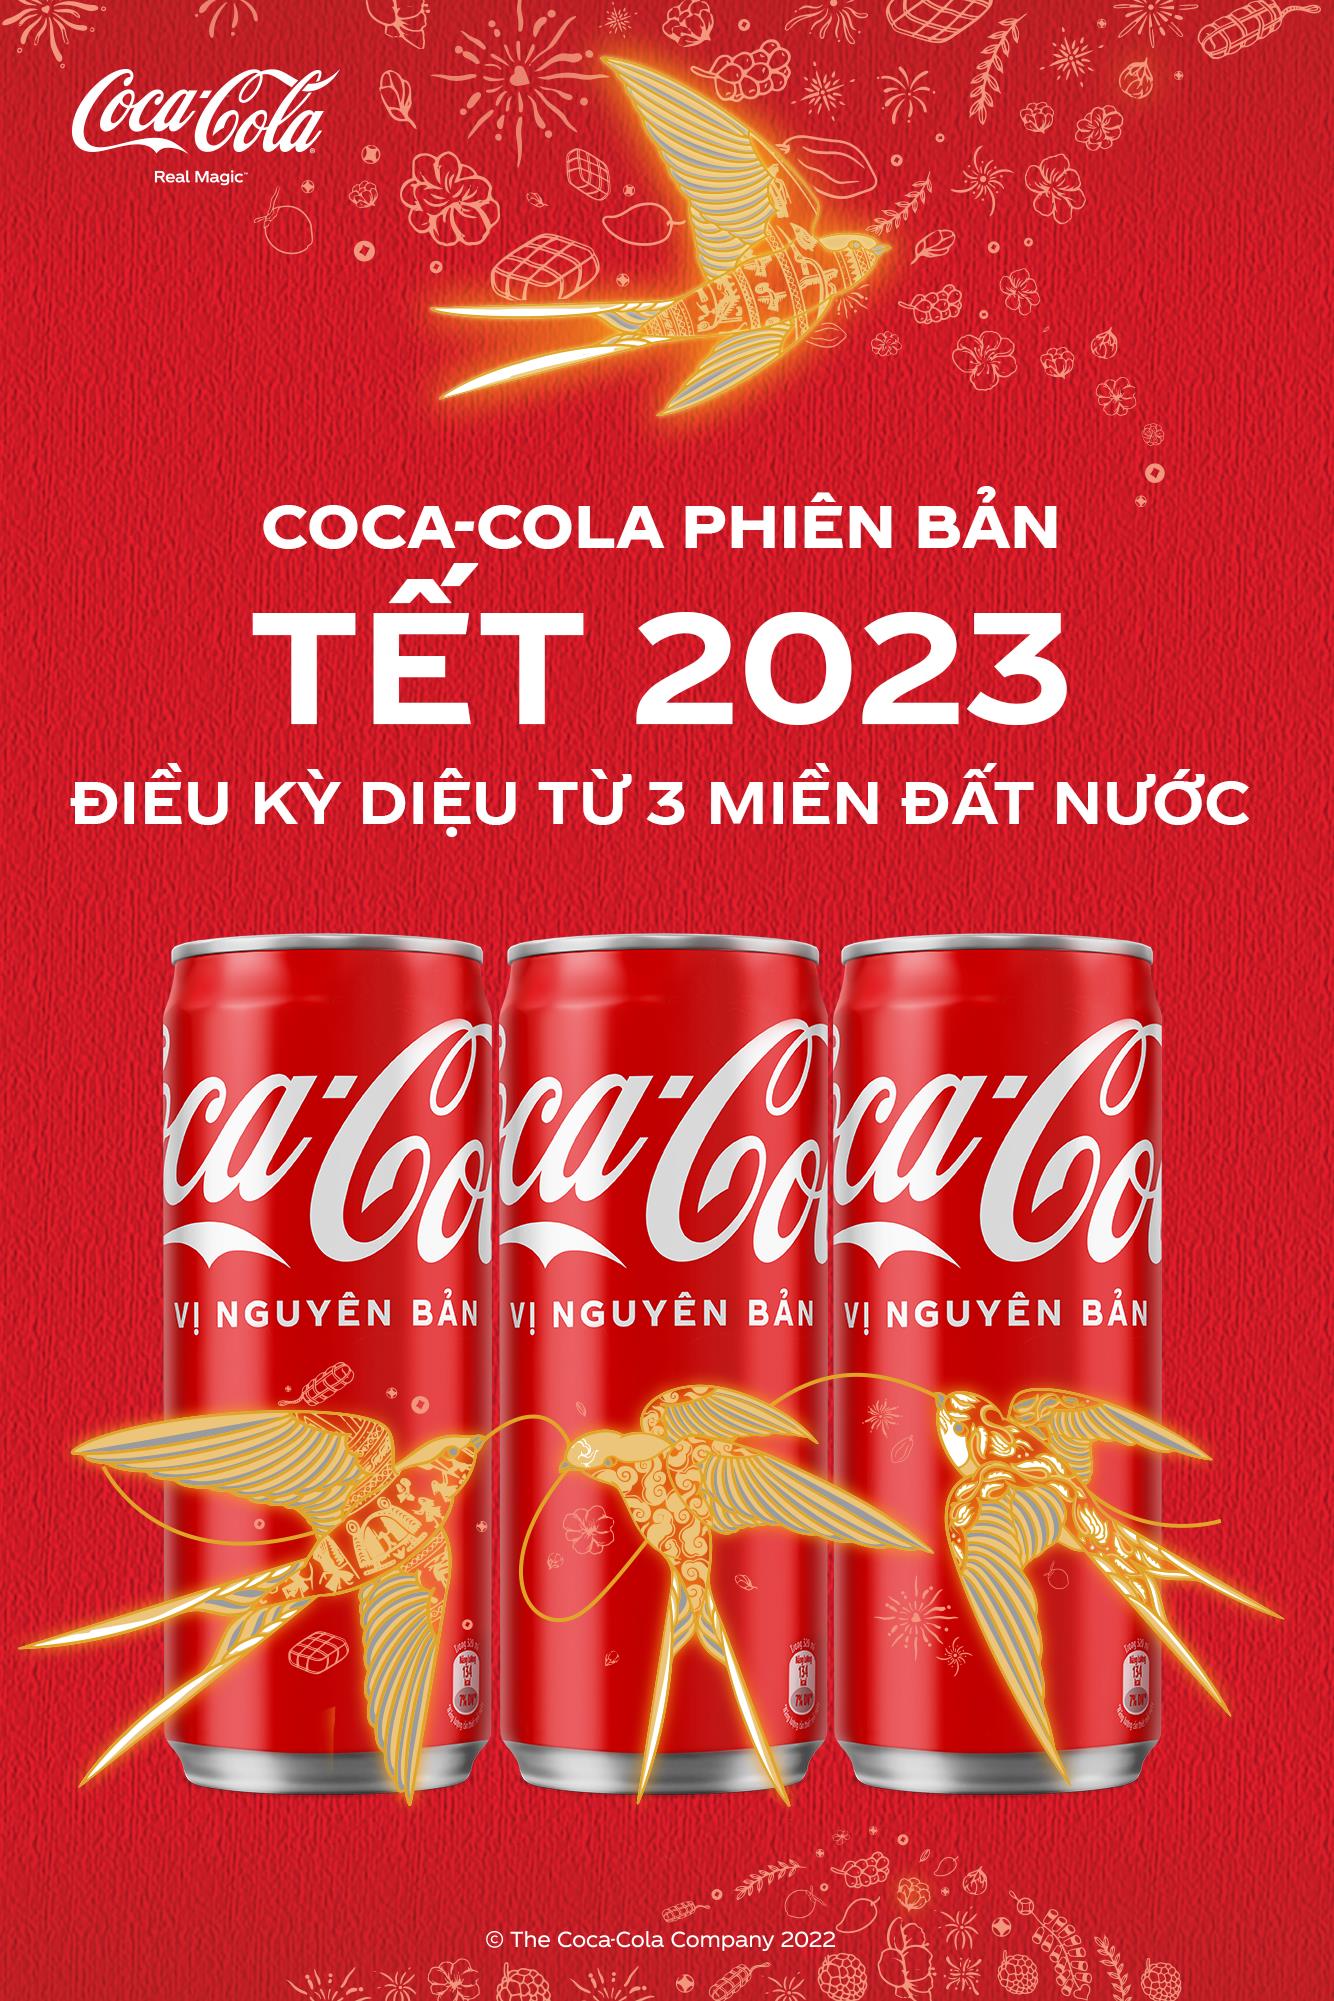 Coca-Cola Việt Nam xác lập kỷ lục thế giới trong chiến dịch Tết 2023, tôn vinh khoảnh khắc diệu kỳ gắn kết gia đình - Ảnh 7.